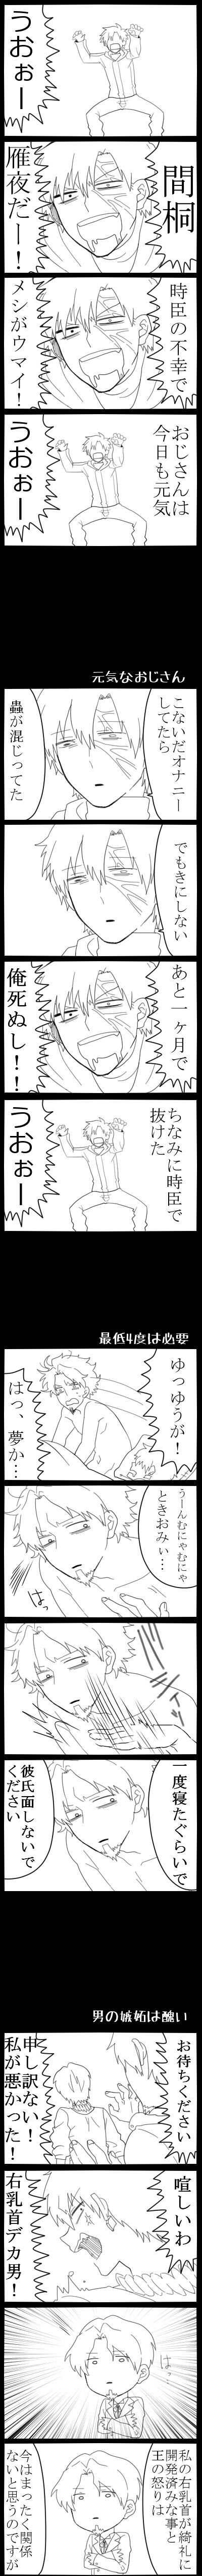 【腐】疲于人生的人所描绘的Fate/Zero插画图片壁纸